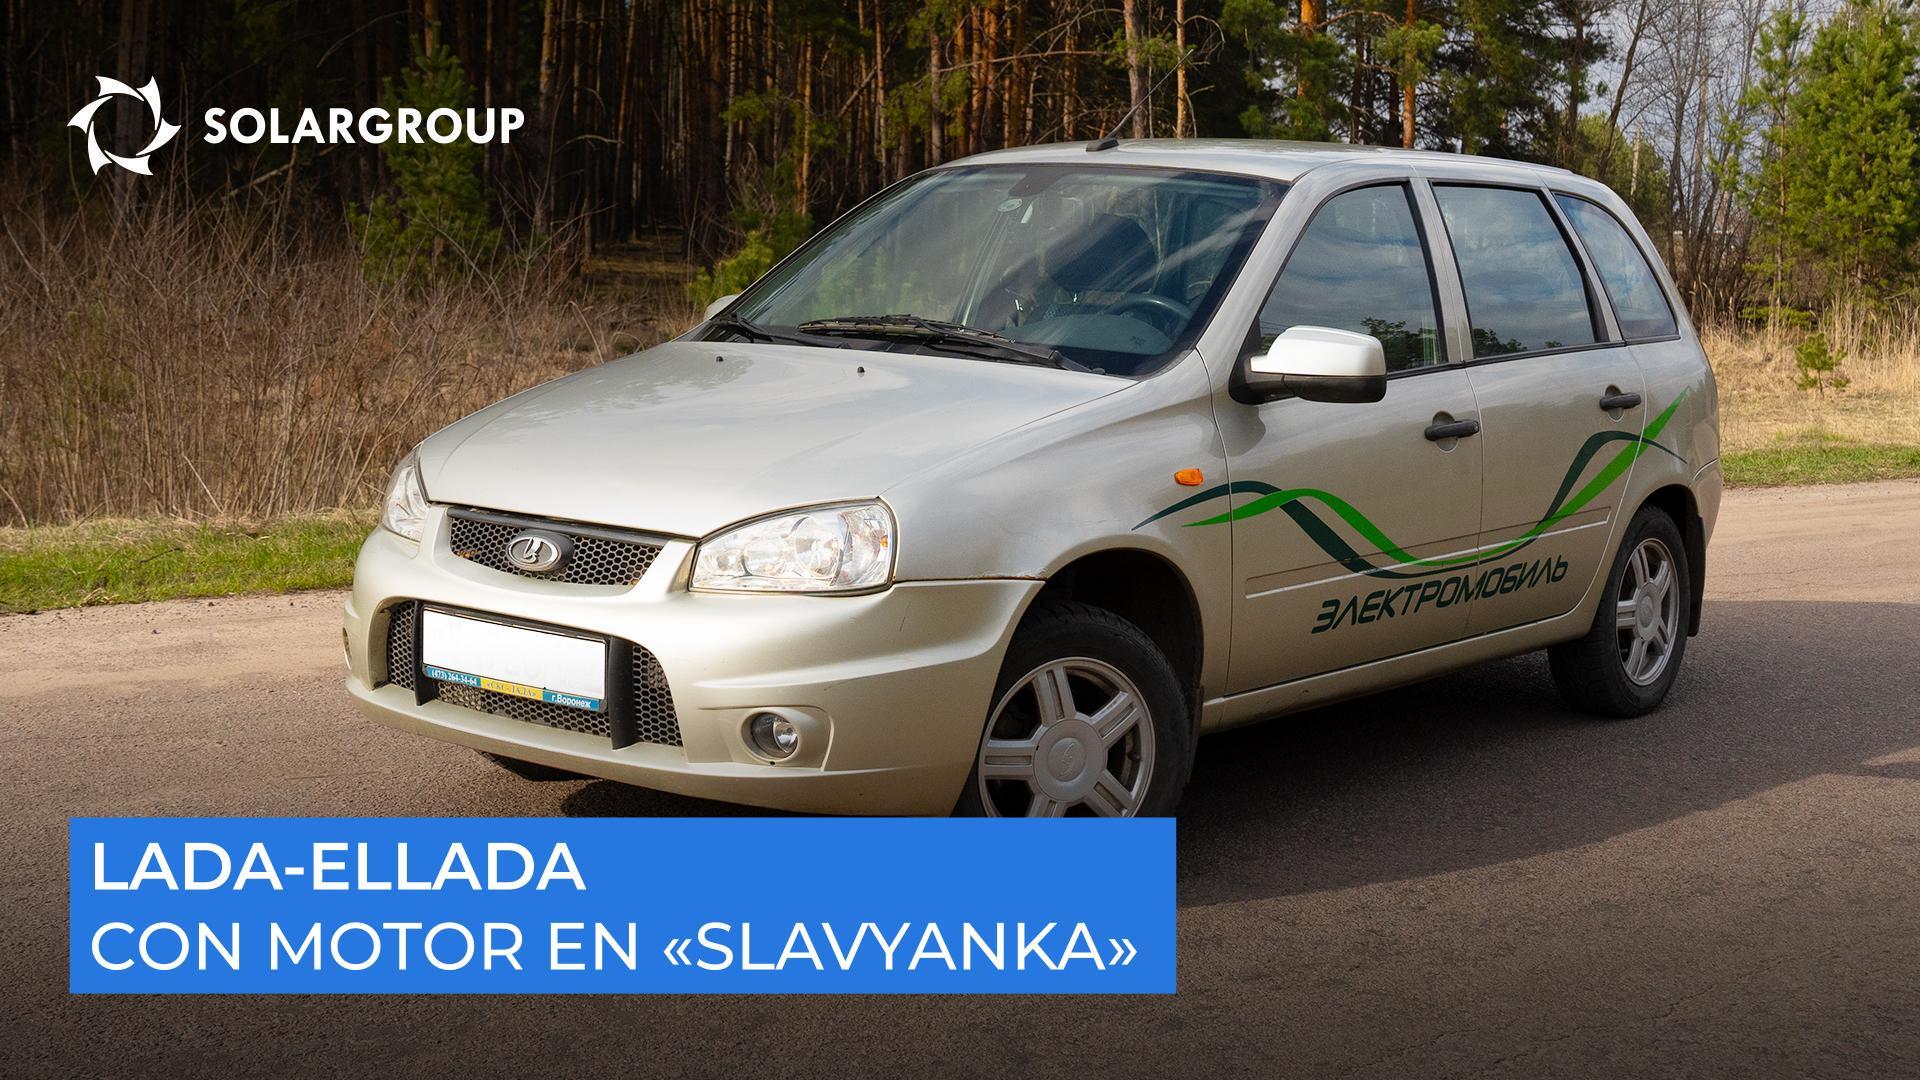 Rápido, silencioso y resistente: ¿qué demostraron las pruebas de marcha del coche eléctrico en Slavyanka?